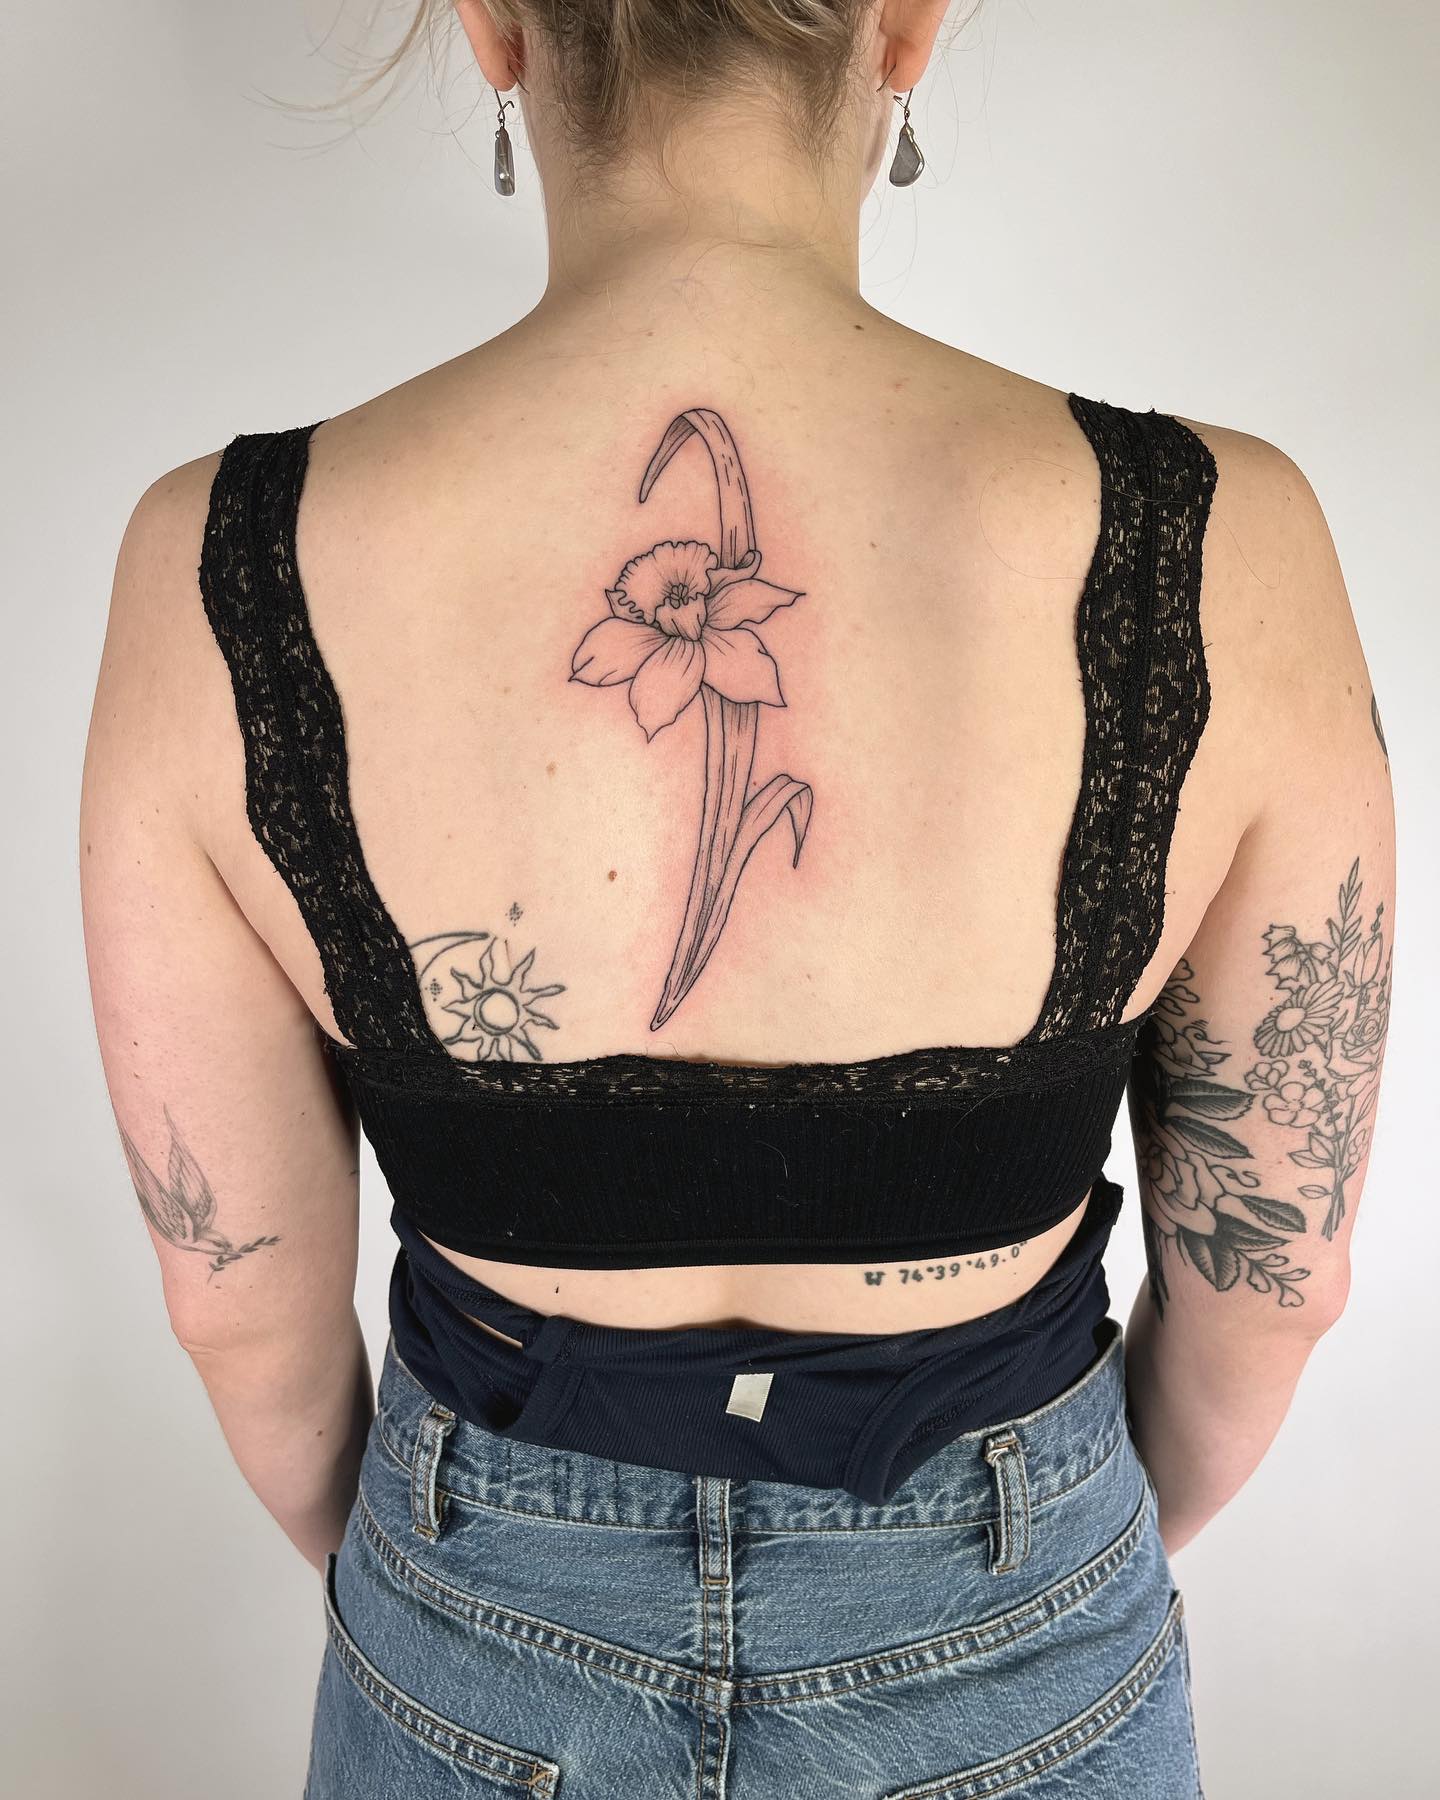 Tatuaje genial de Narciso en la espalda.